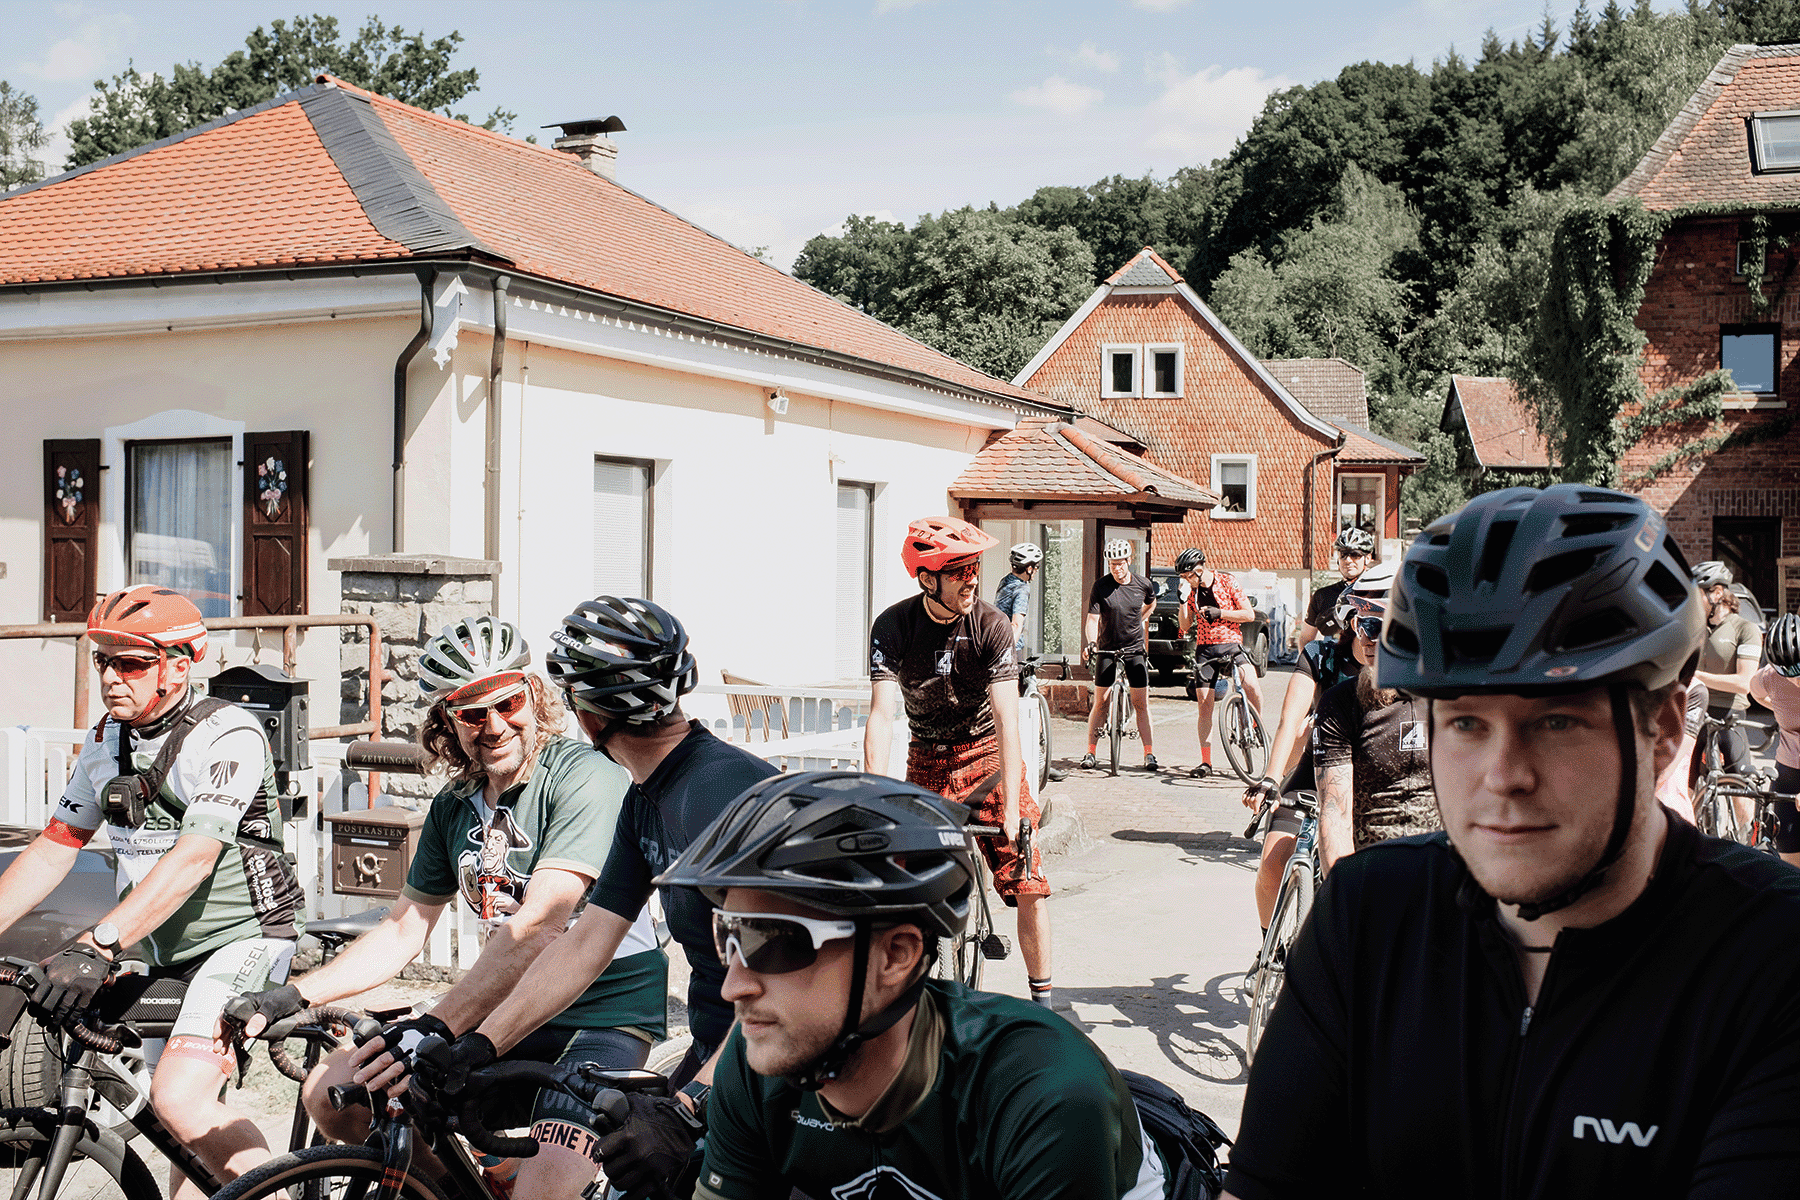 Eine Gruppe von Radfahrern mti Helmen steht in einer dörflichen Umgebung auf der Straße zwischen Häusern.